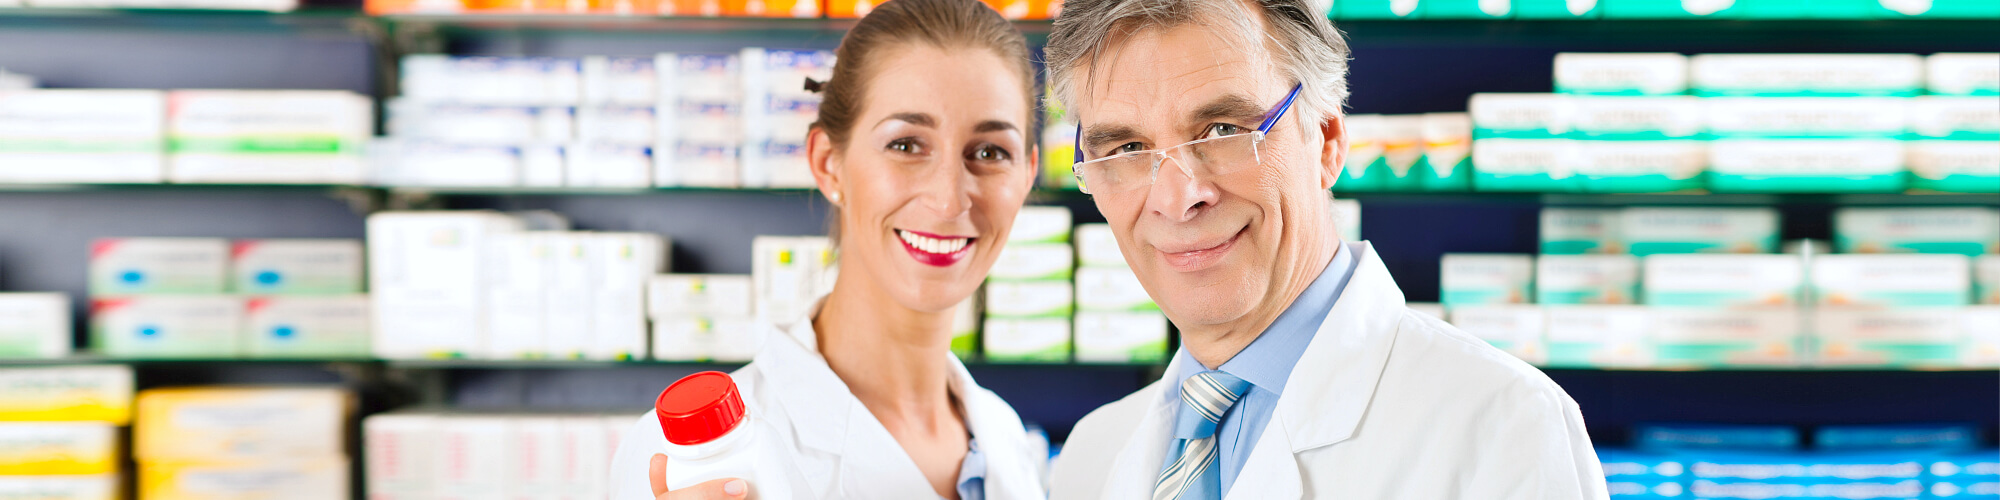 male and female pharmacist